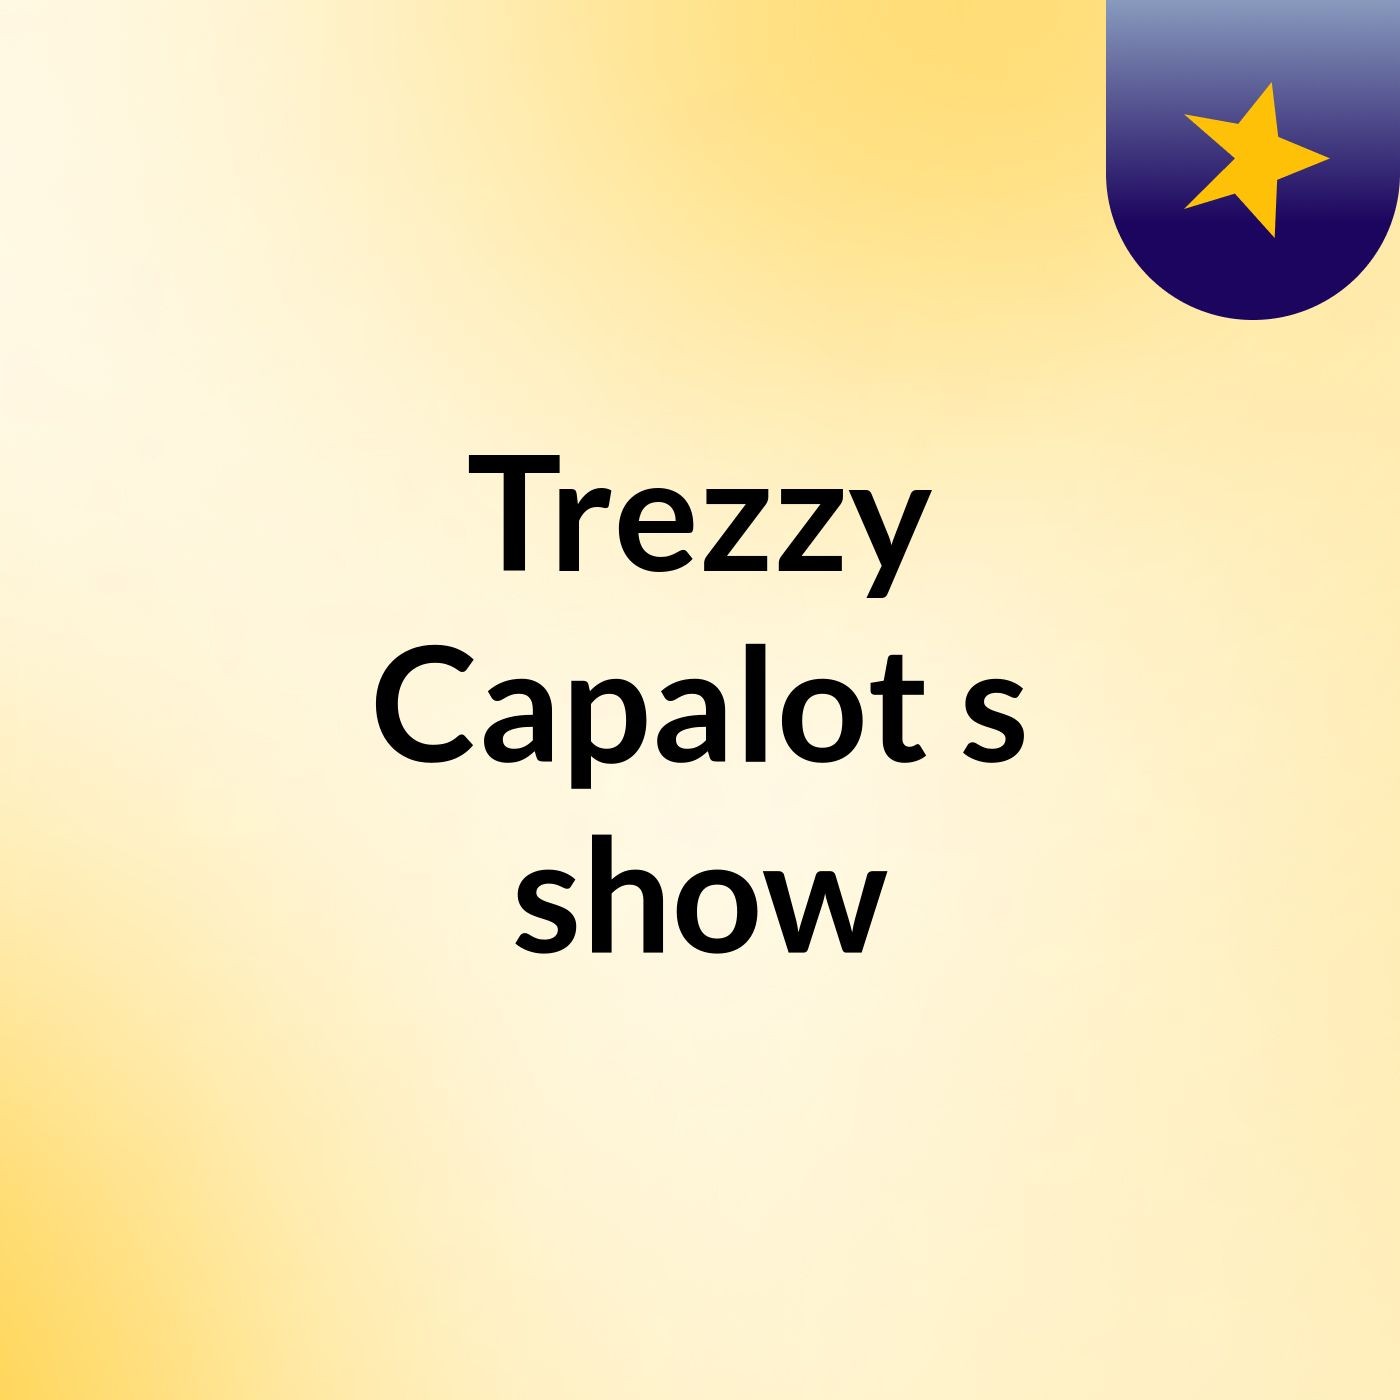 Trezzy Capalot's show